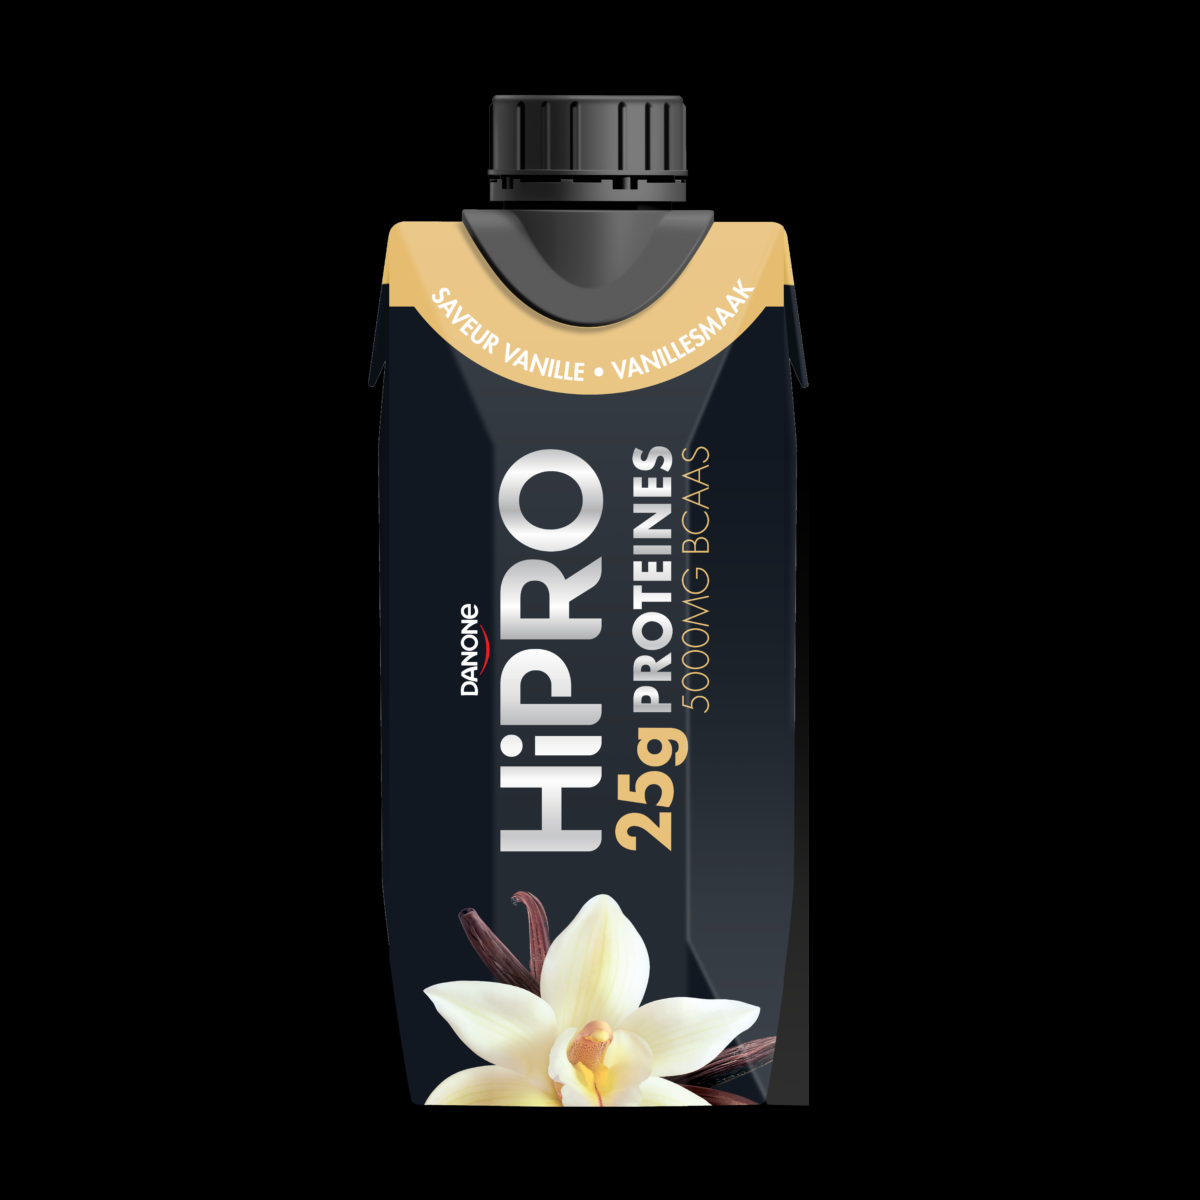 HiPRO Vanille - Protein Drink